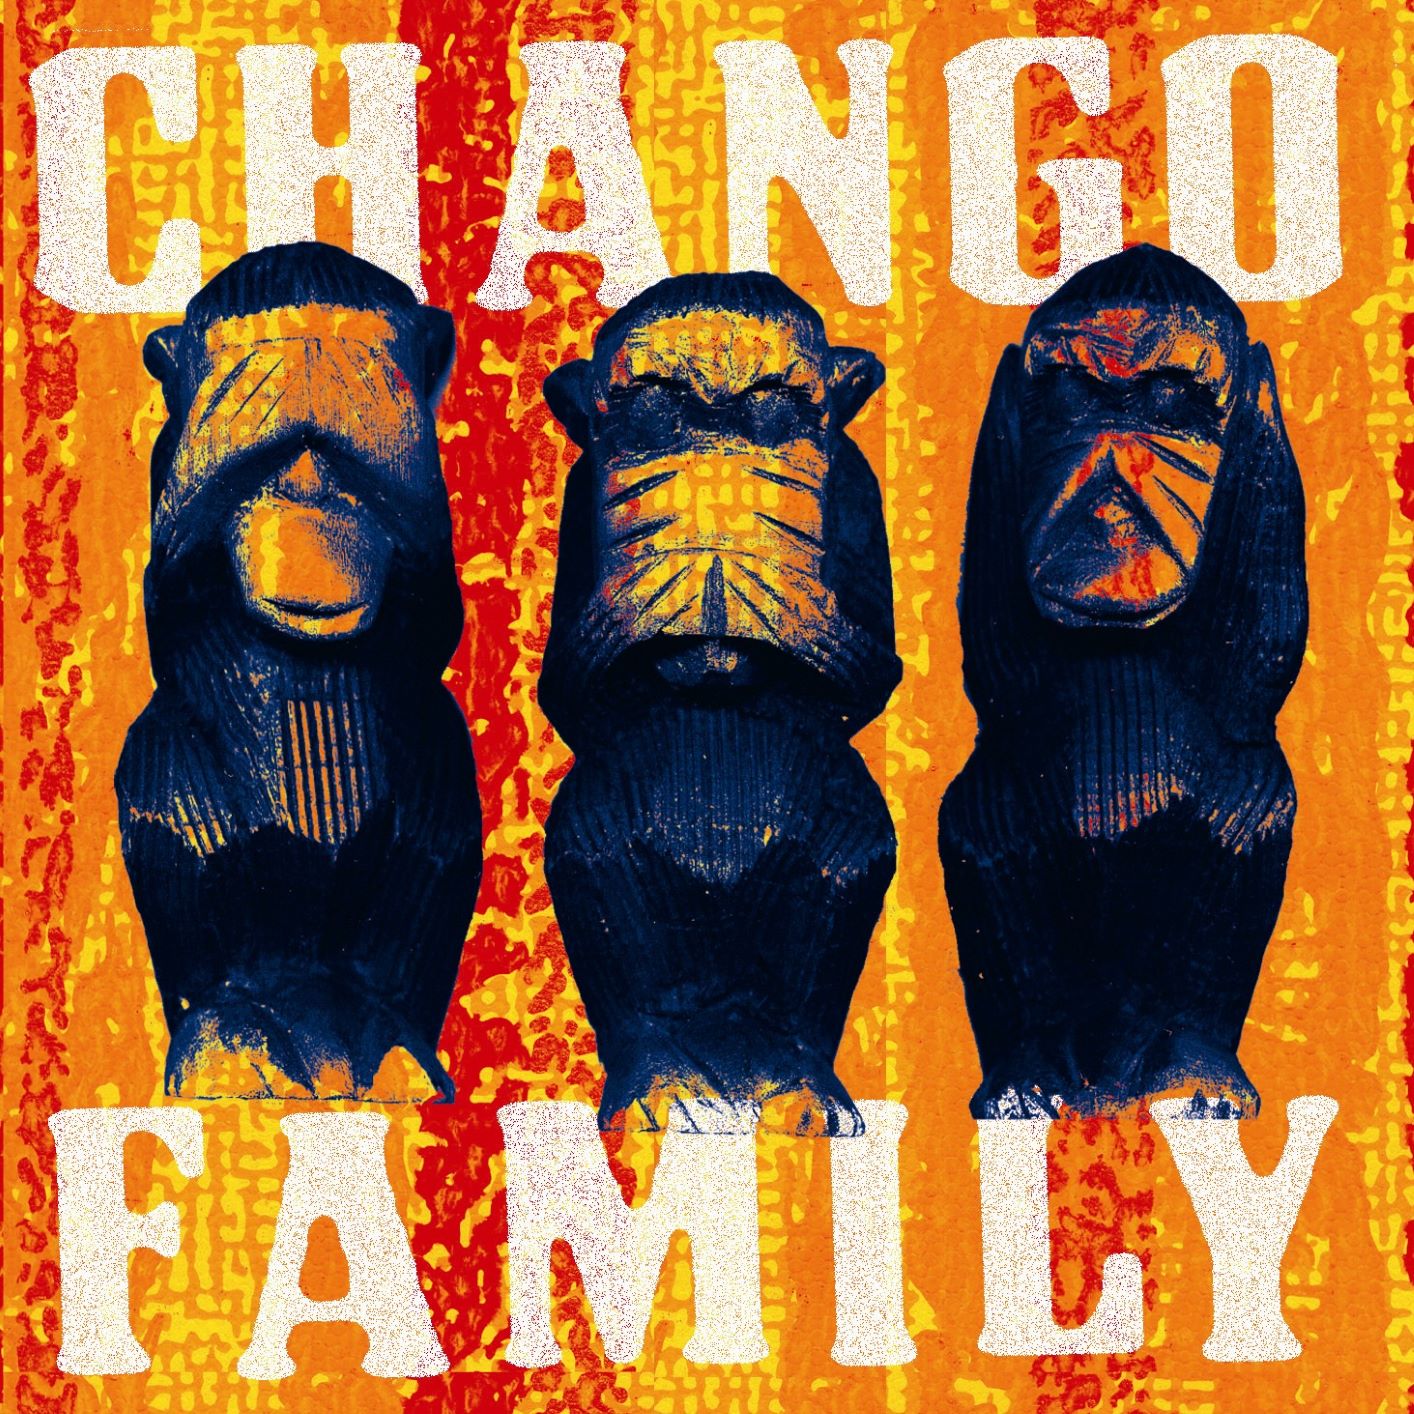 La Chango Family